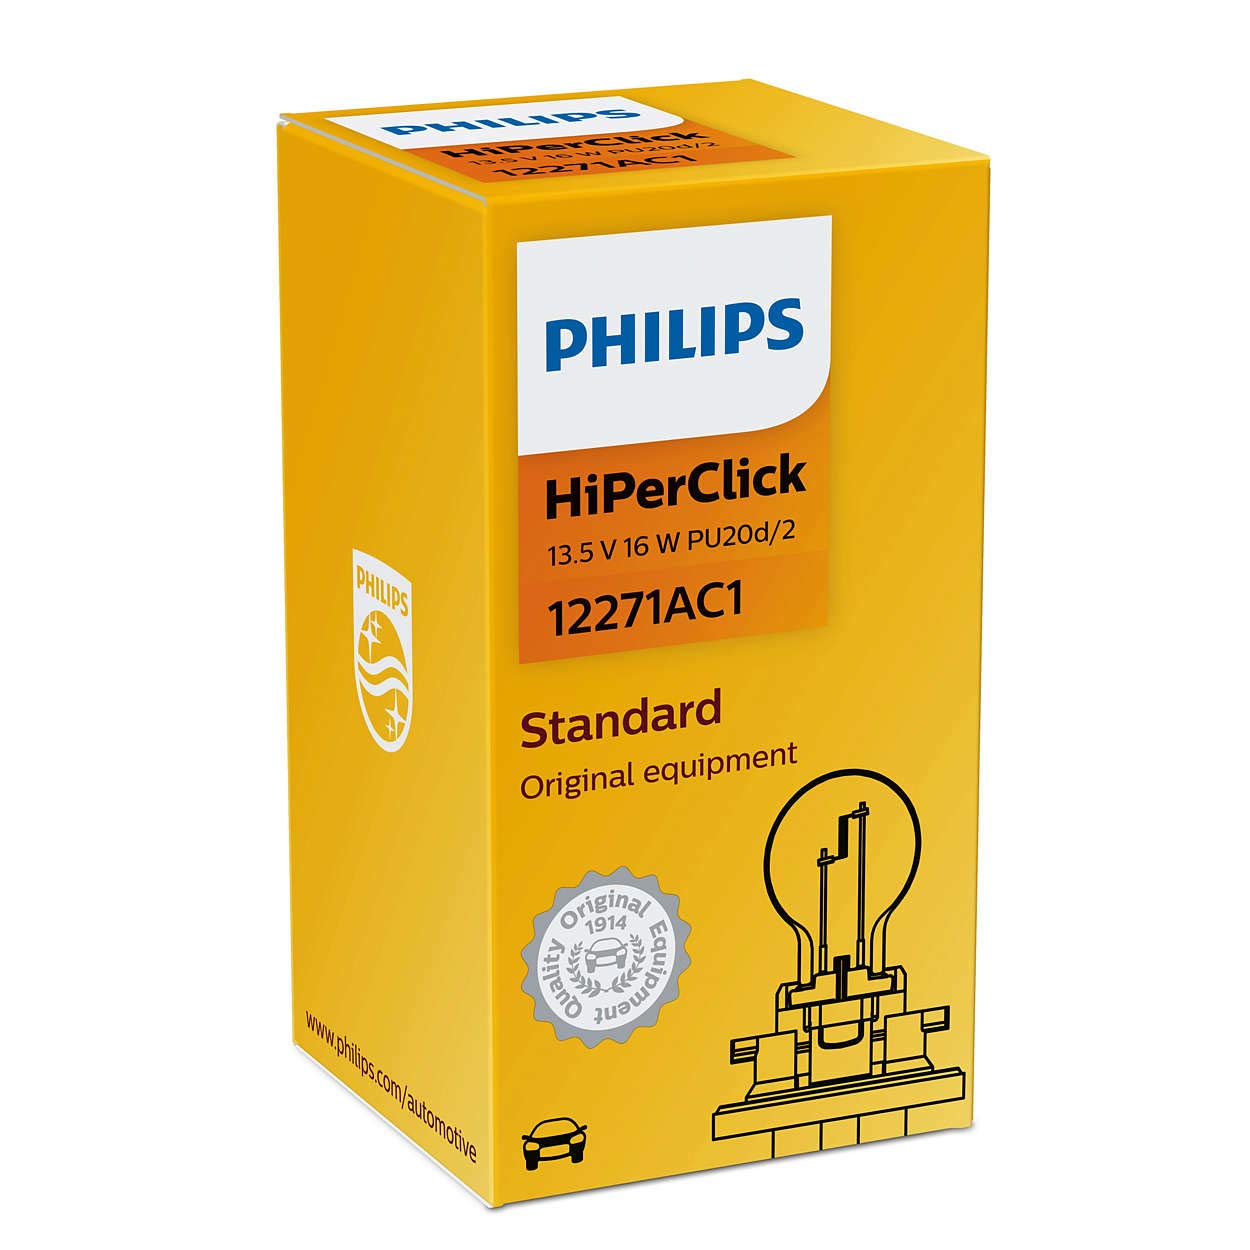 Philips 12271 AC1 Lampe Licht Blinklicht von Philips